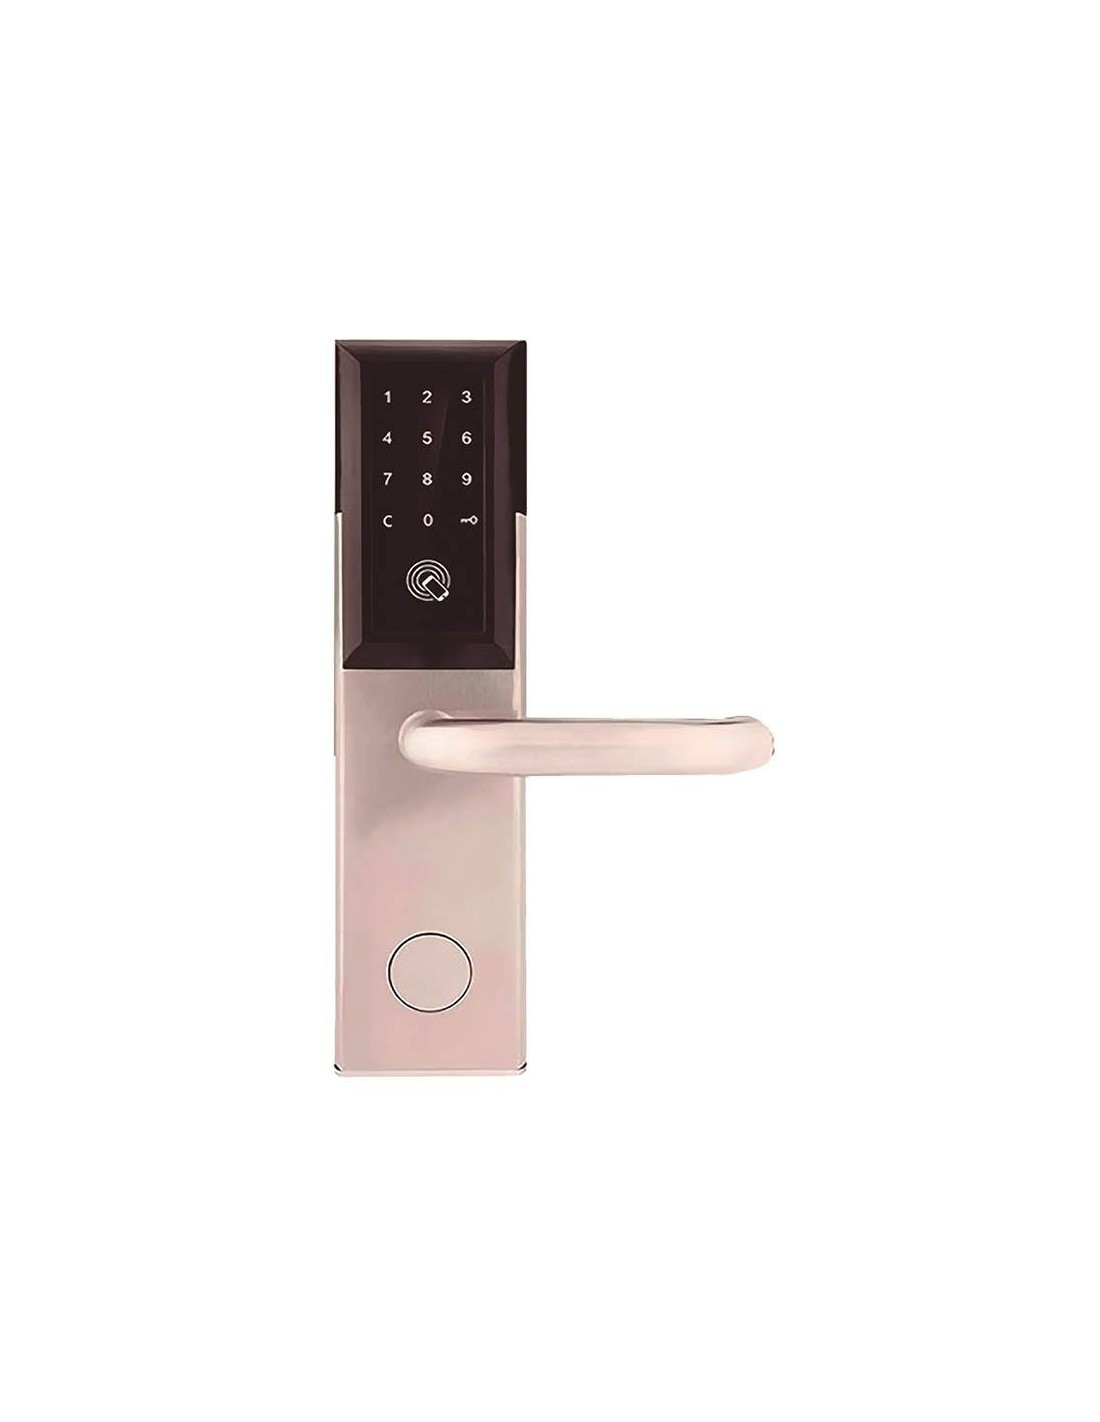 Cerradura inteligente con bluetooth, tarjeta, llave, código OS8810BLE DIEL  IZQUIERDA